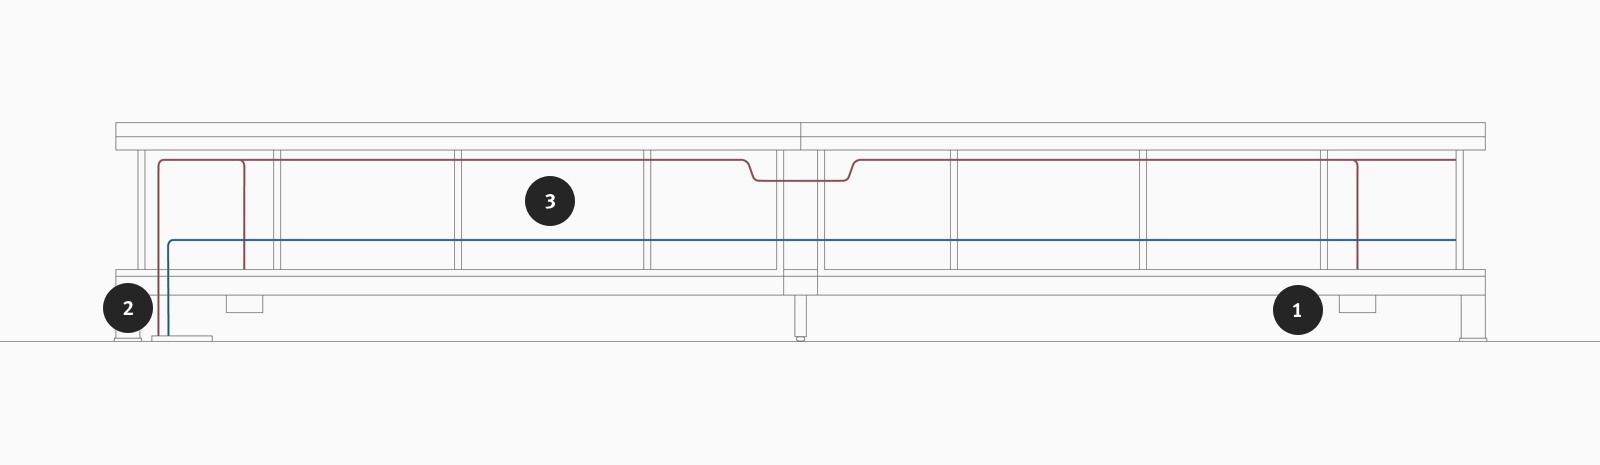 Un dibujo lineal del enrutamiento de datos y alimentación de Canvas Dock.